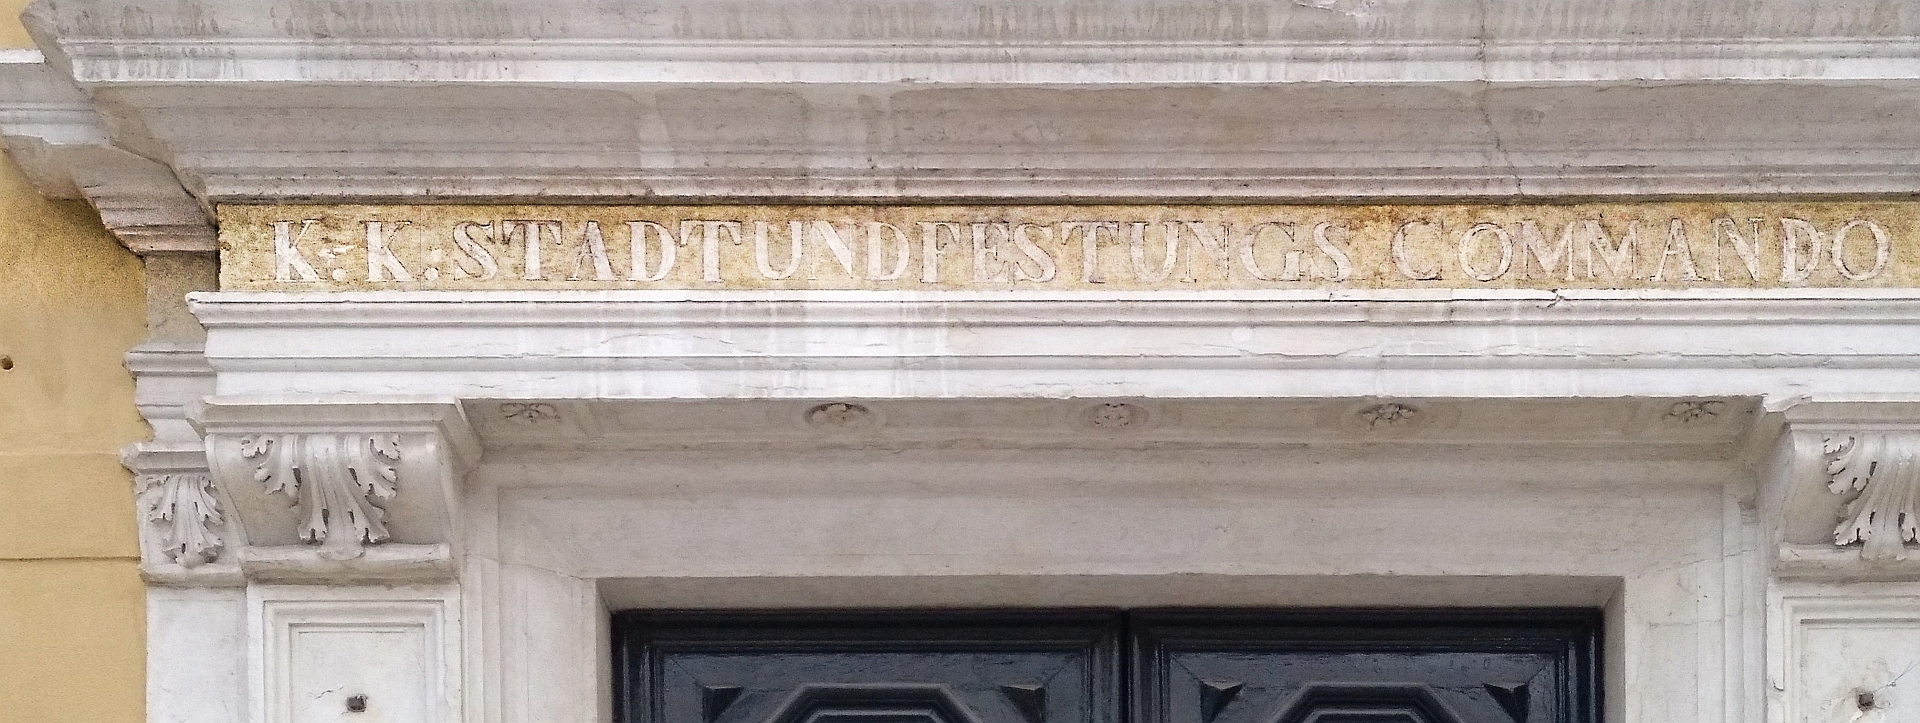 K&K-STADT- UND FESTUNGSCOMMANDO ist auch noch zu lesen 150 Jahre nachdem die Lettern über diesem Türportal entfernt wurden.